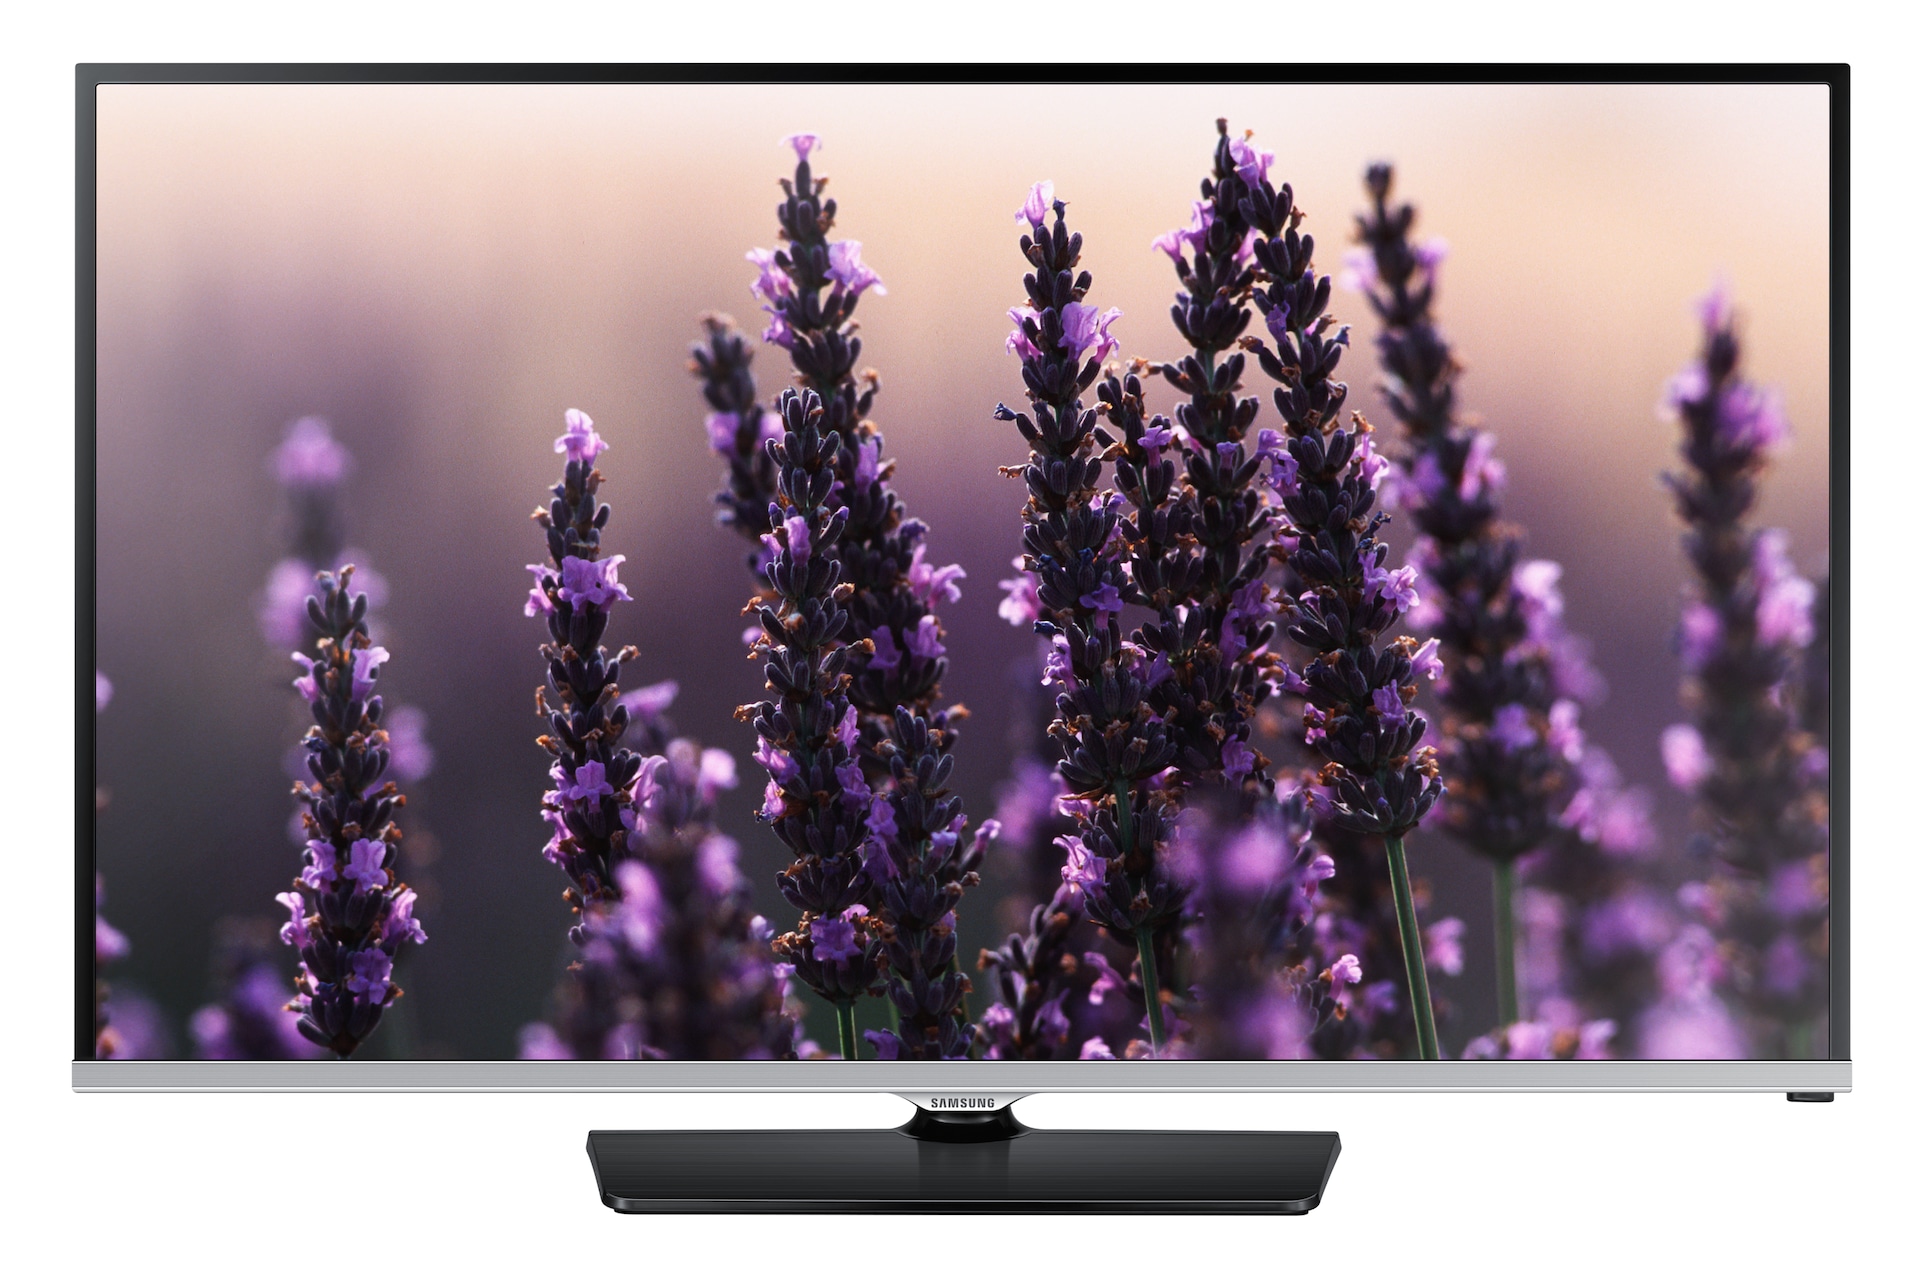 TV LED 22'', Full HD, 100Hz CMR - UE22H5000